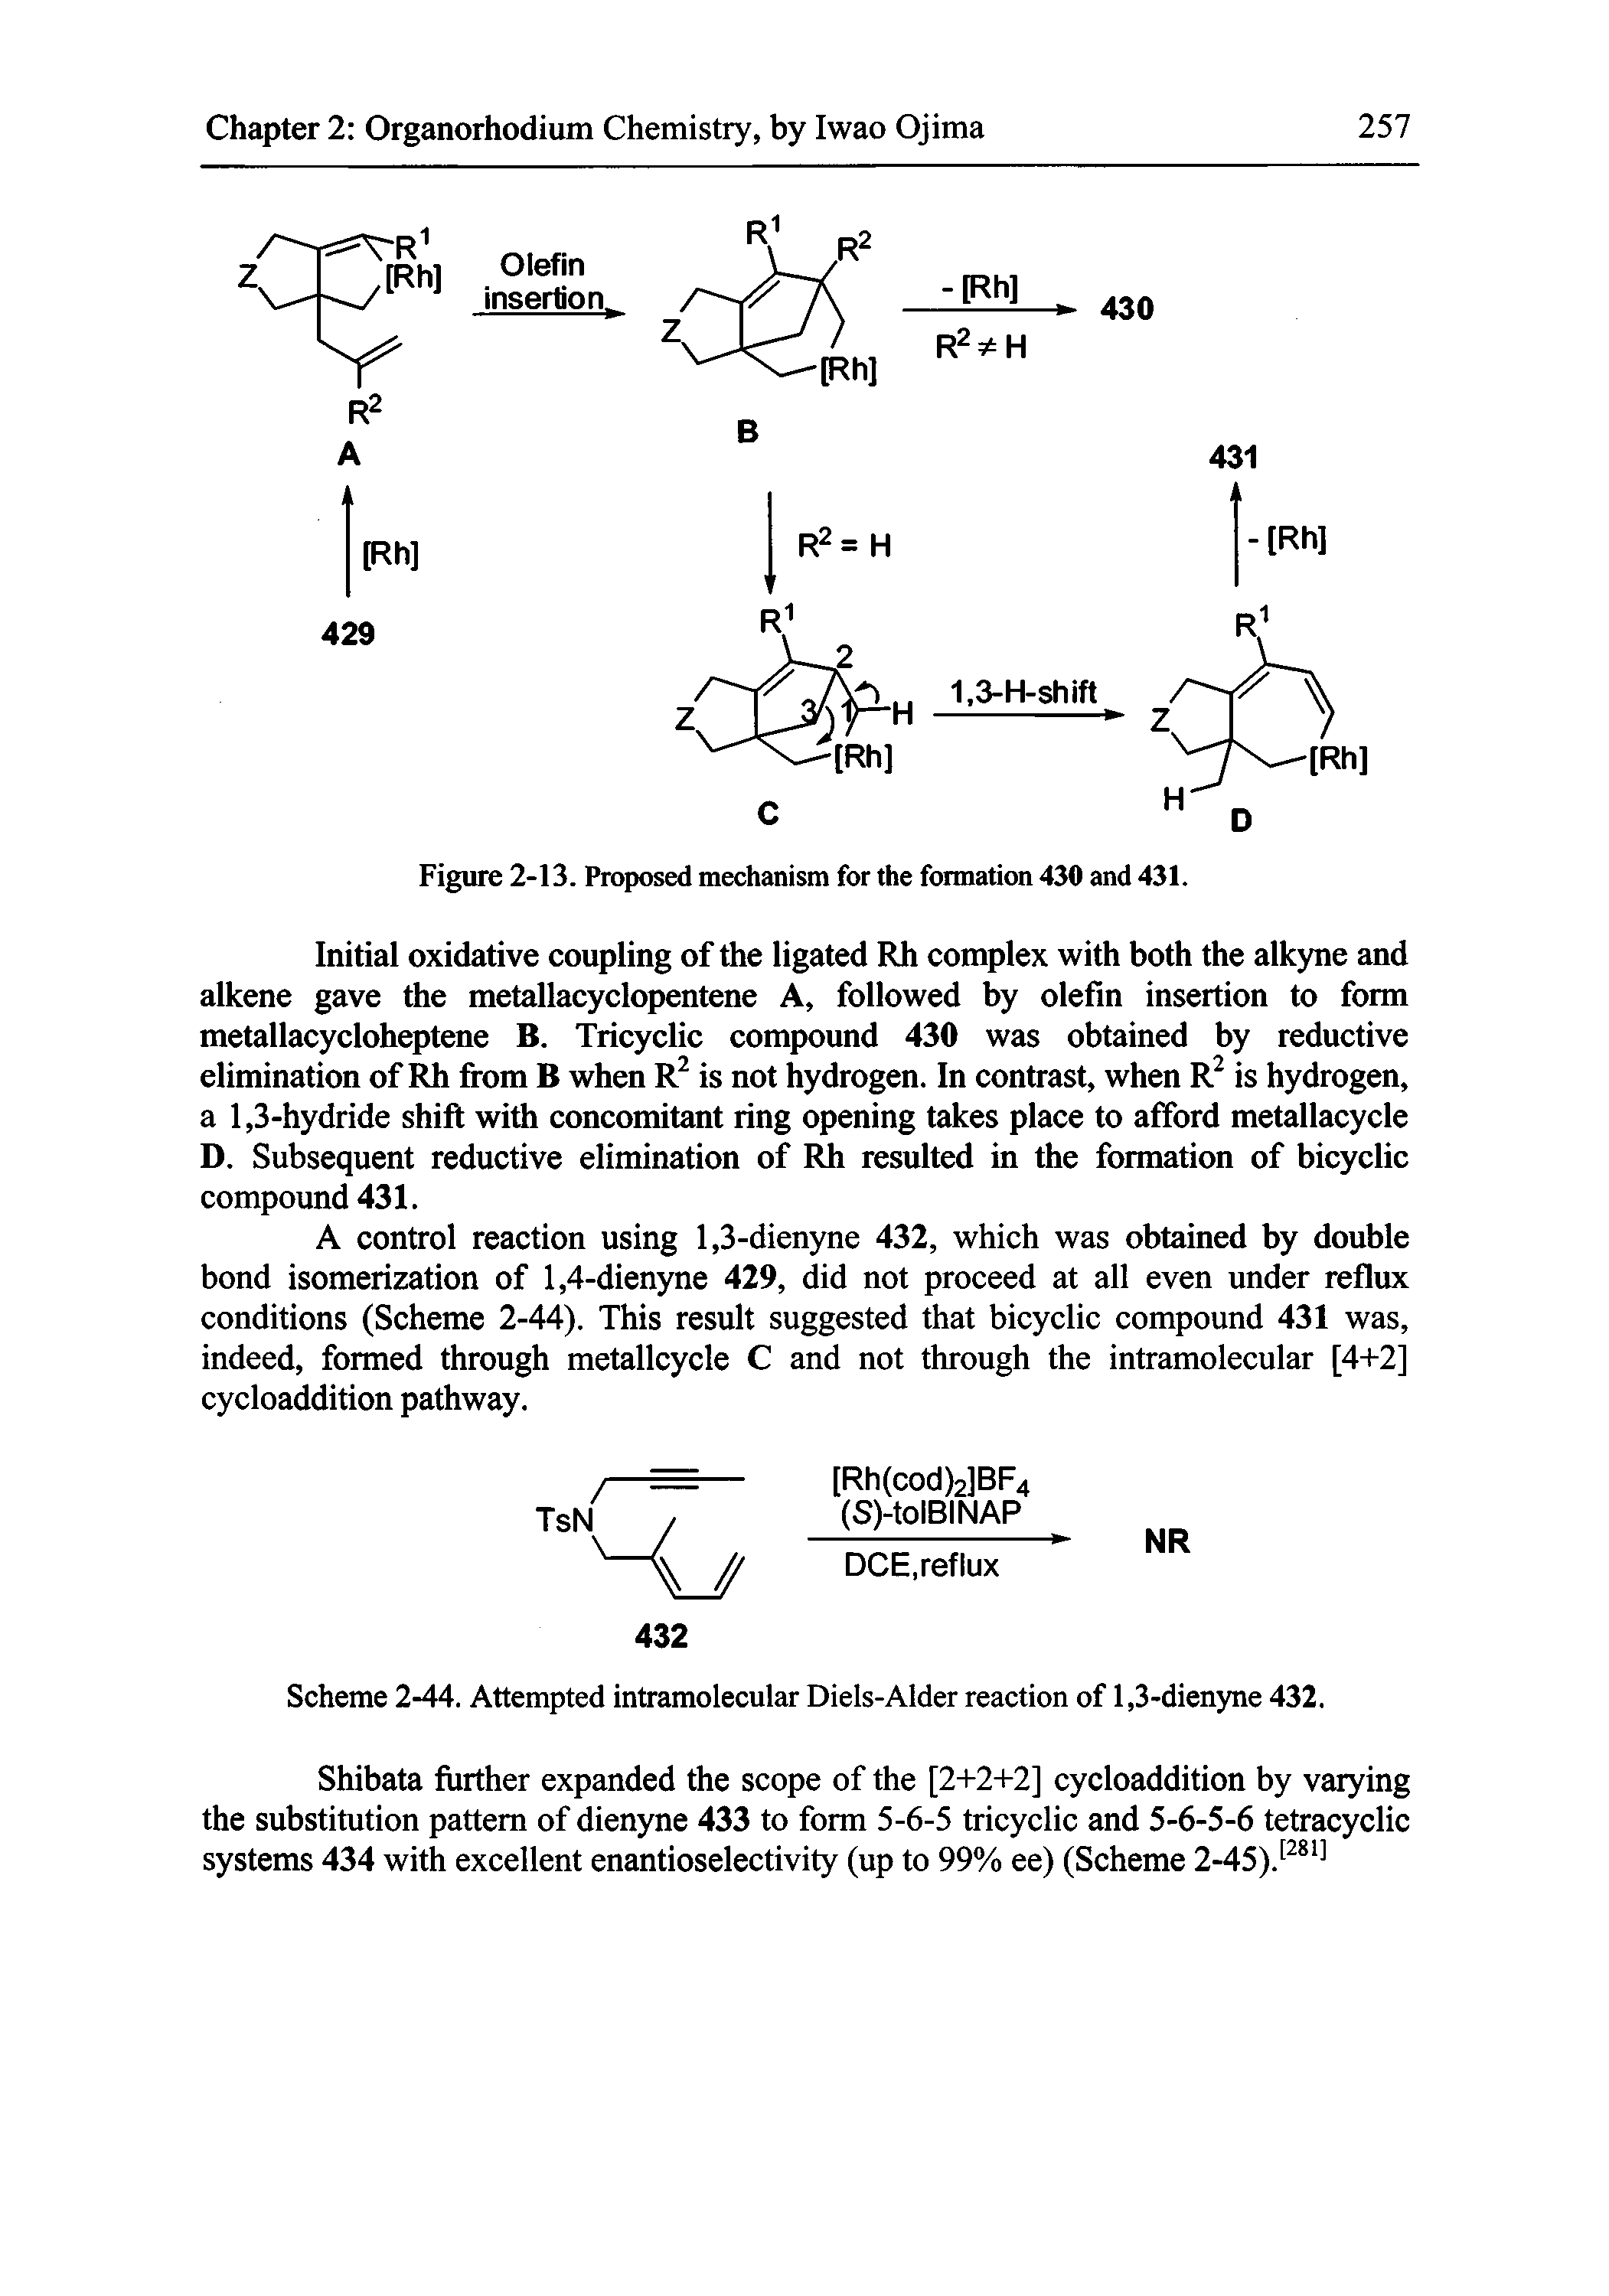 Scheme 2-44. Attempted intramolecular Diels-Alder reaction of 1,3-dienyne 432.